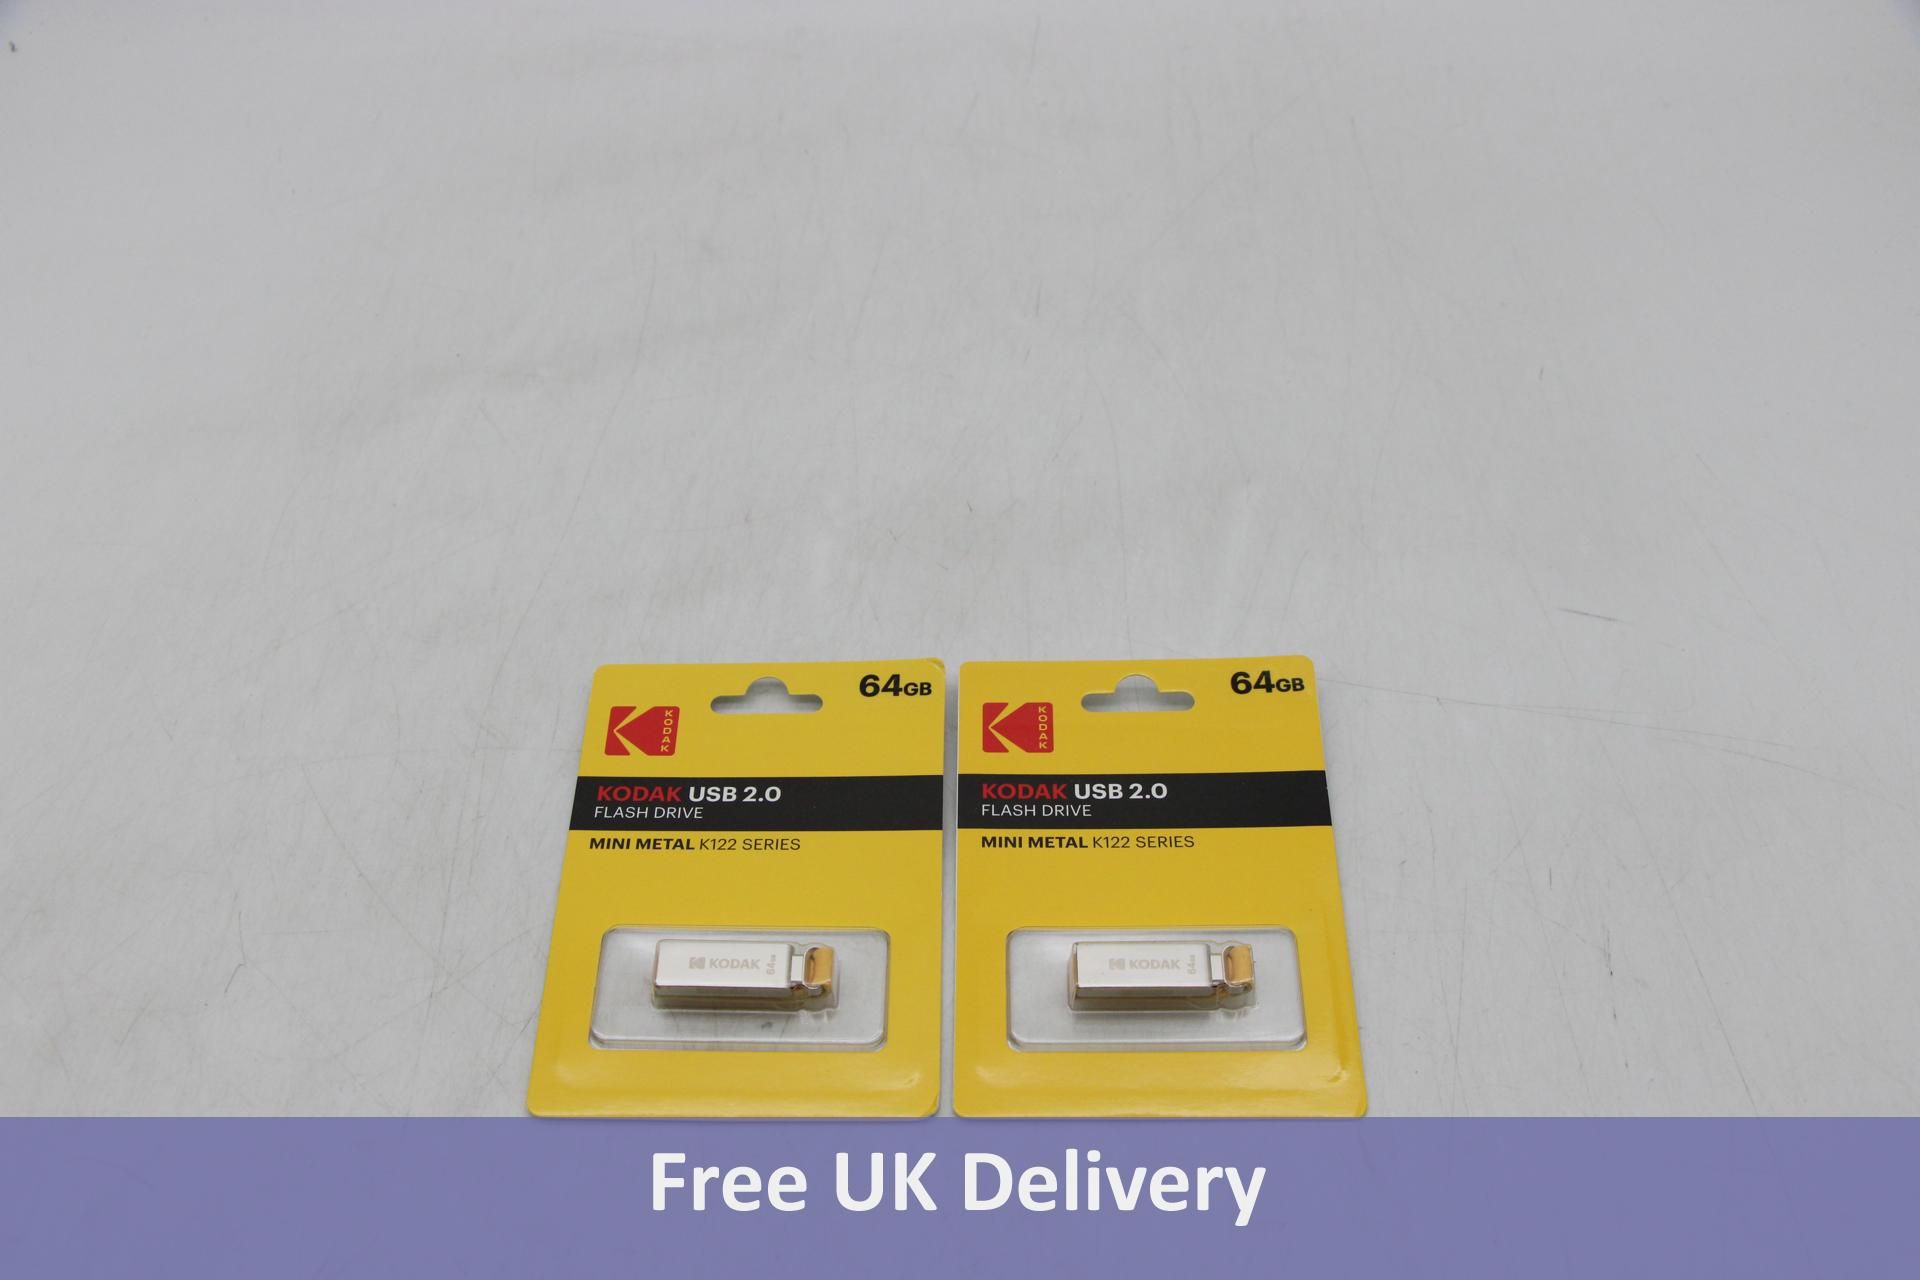 Twenty Kodak Mini Metal K122 USB 2.0 Flash Drives